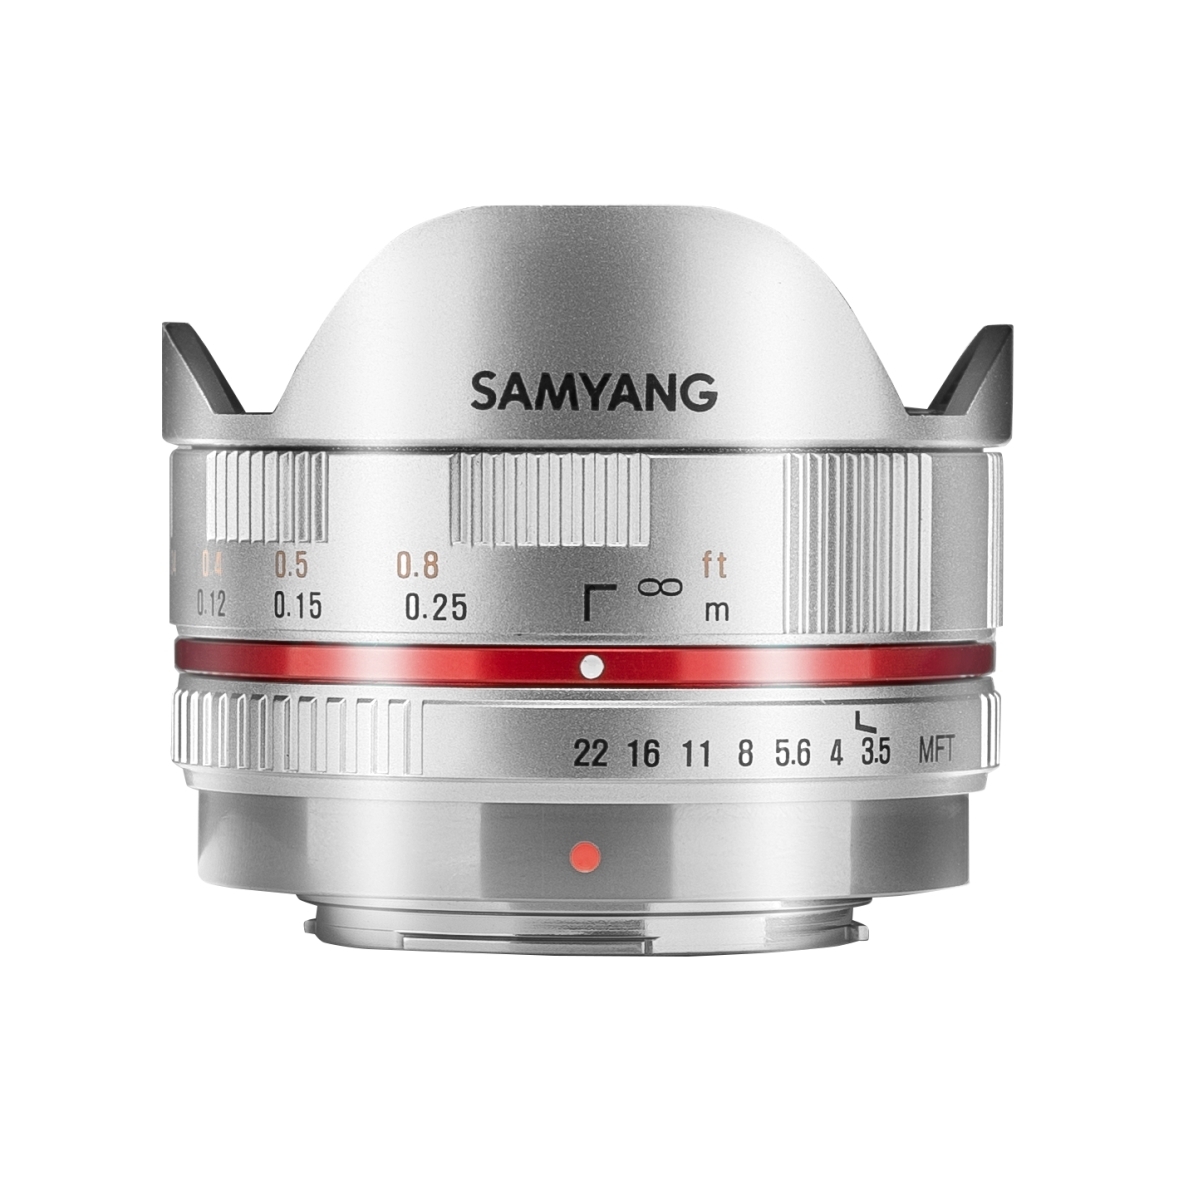 レンズ(単焦点)Samyang 7.5mm F3.5 fish-eye MFT - mirabellor.com